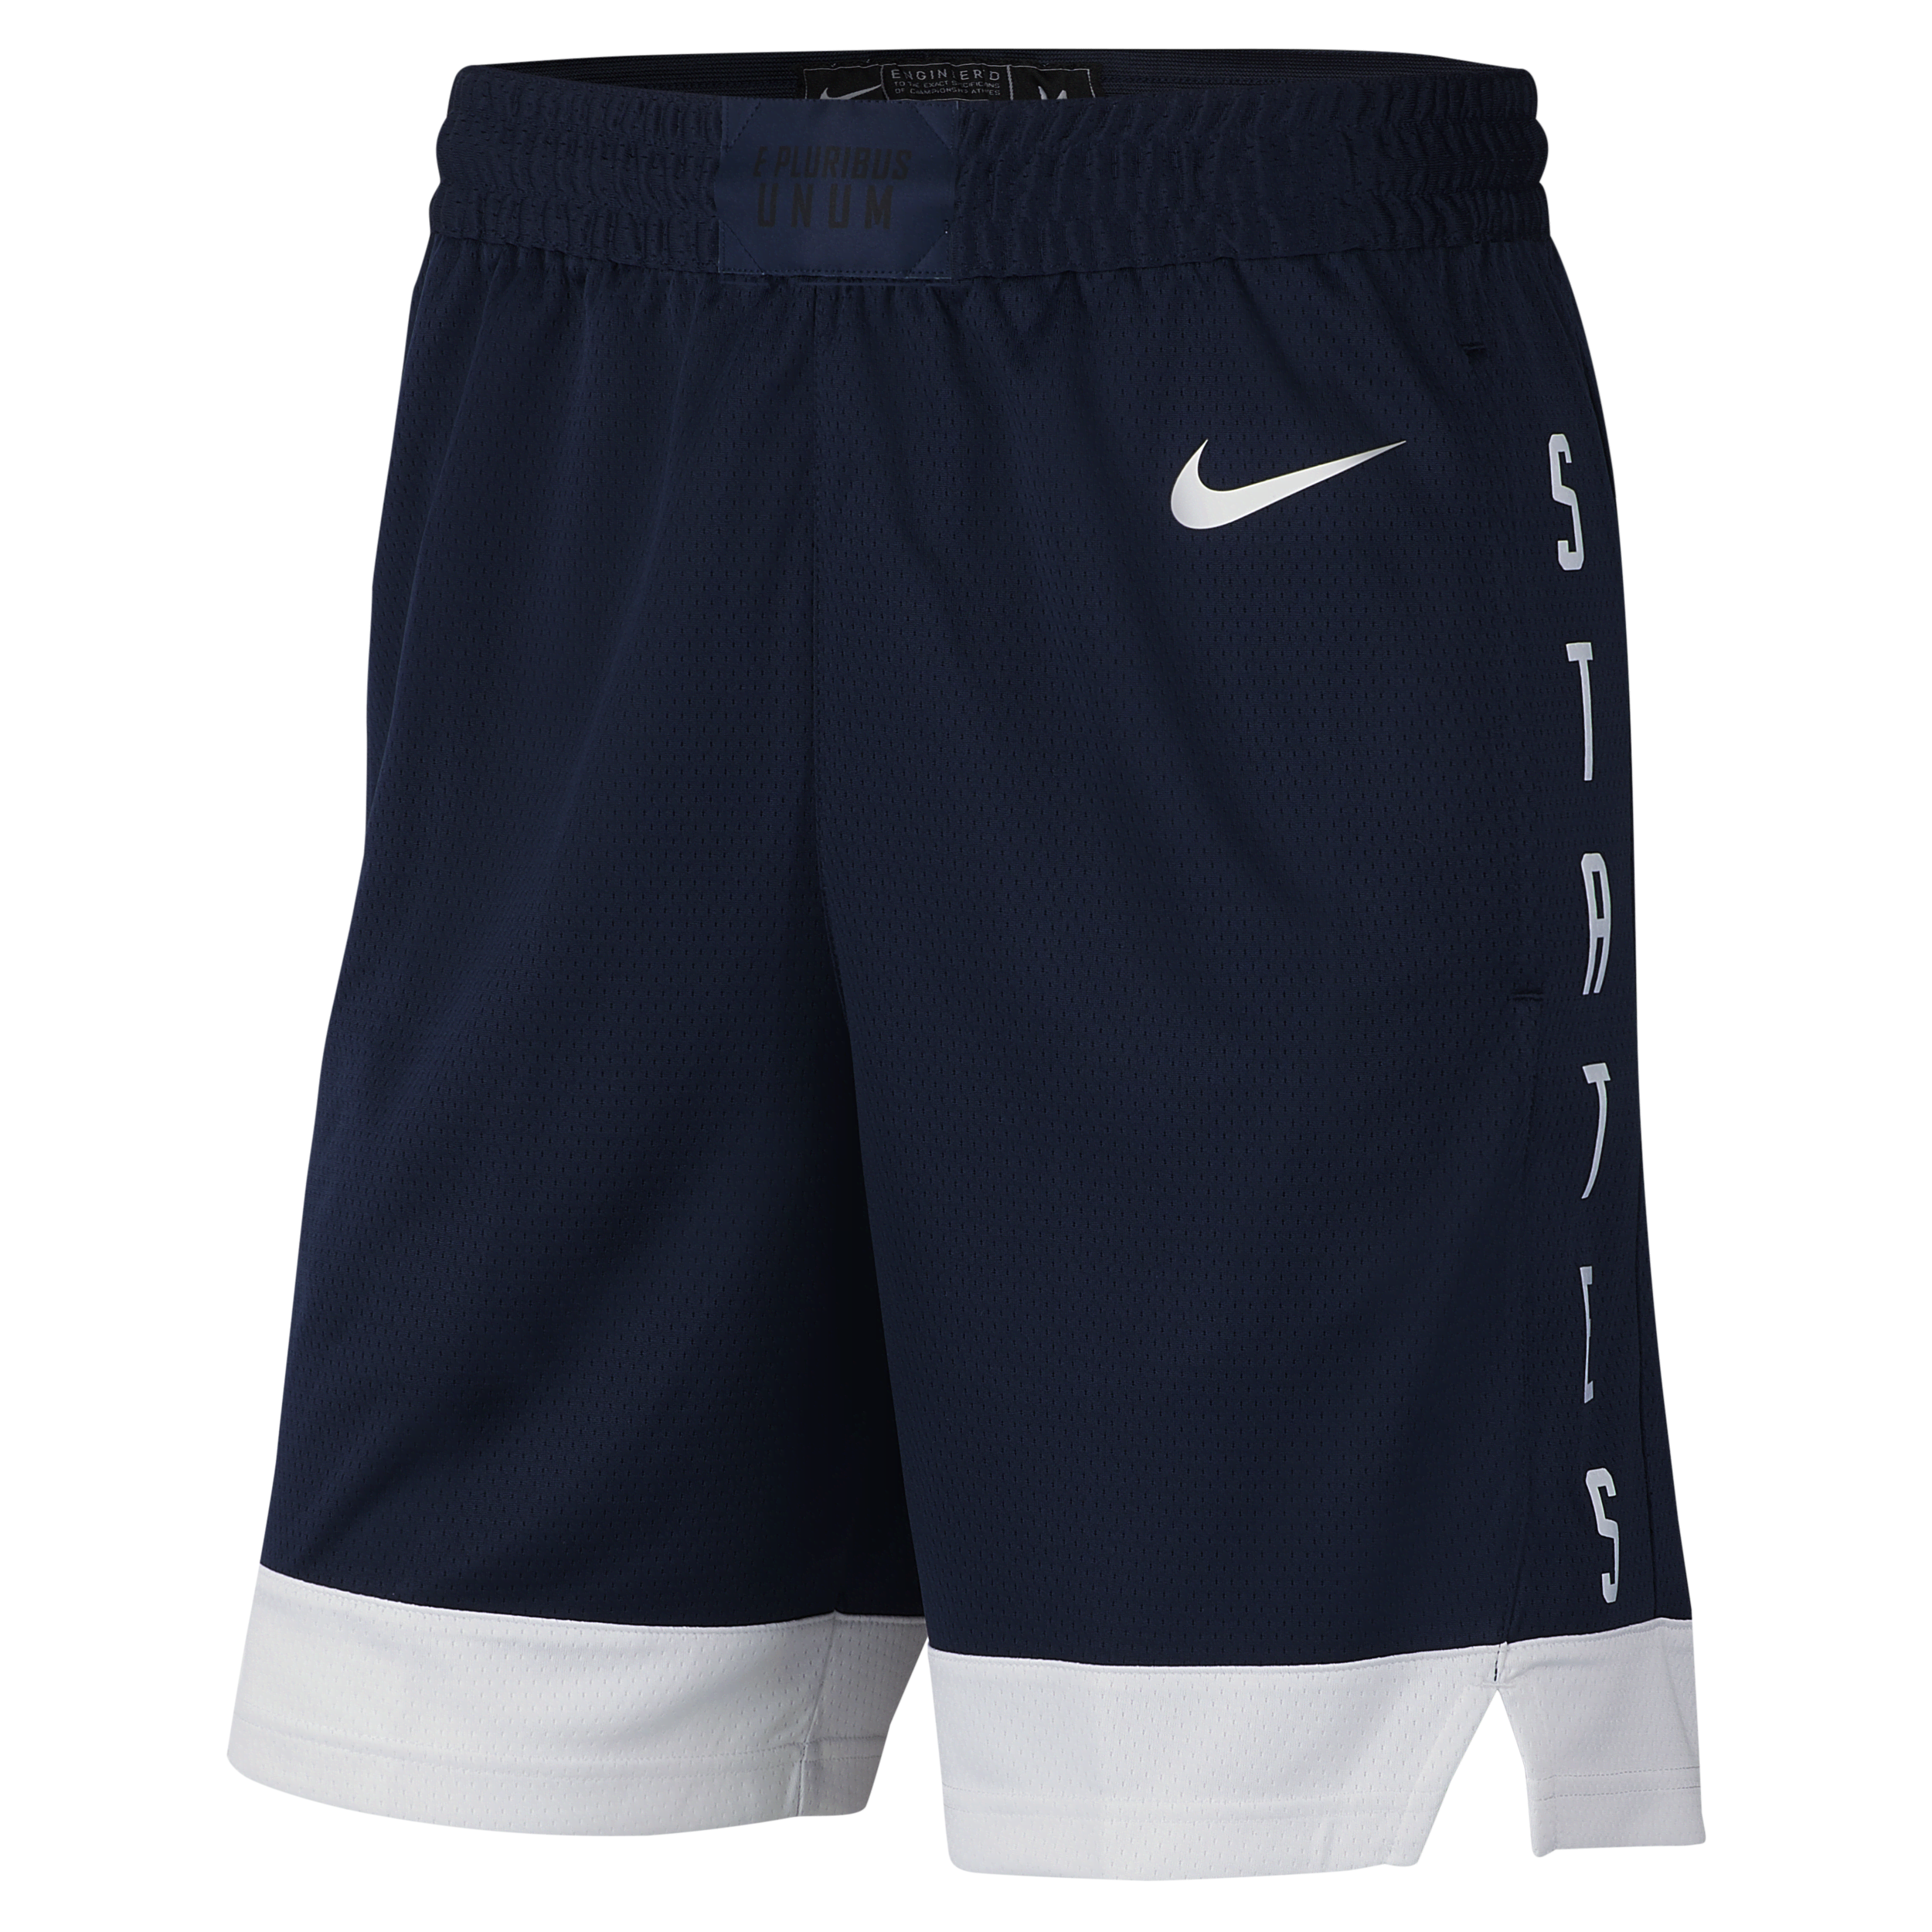 USA Nike (Road) Basketbalshorts voor heren - Blauw